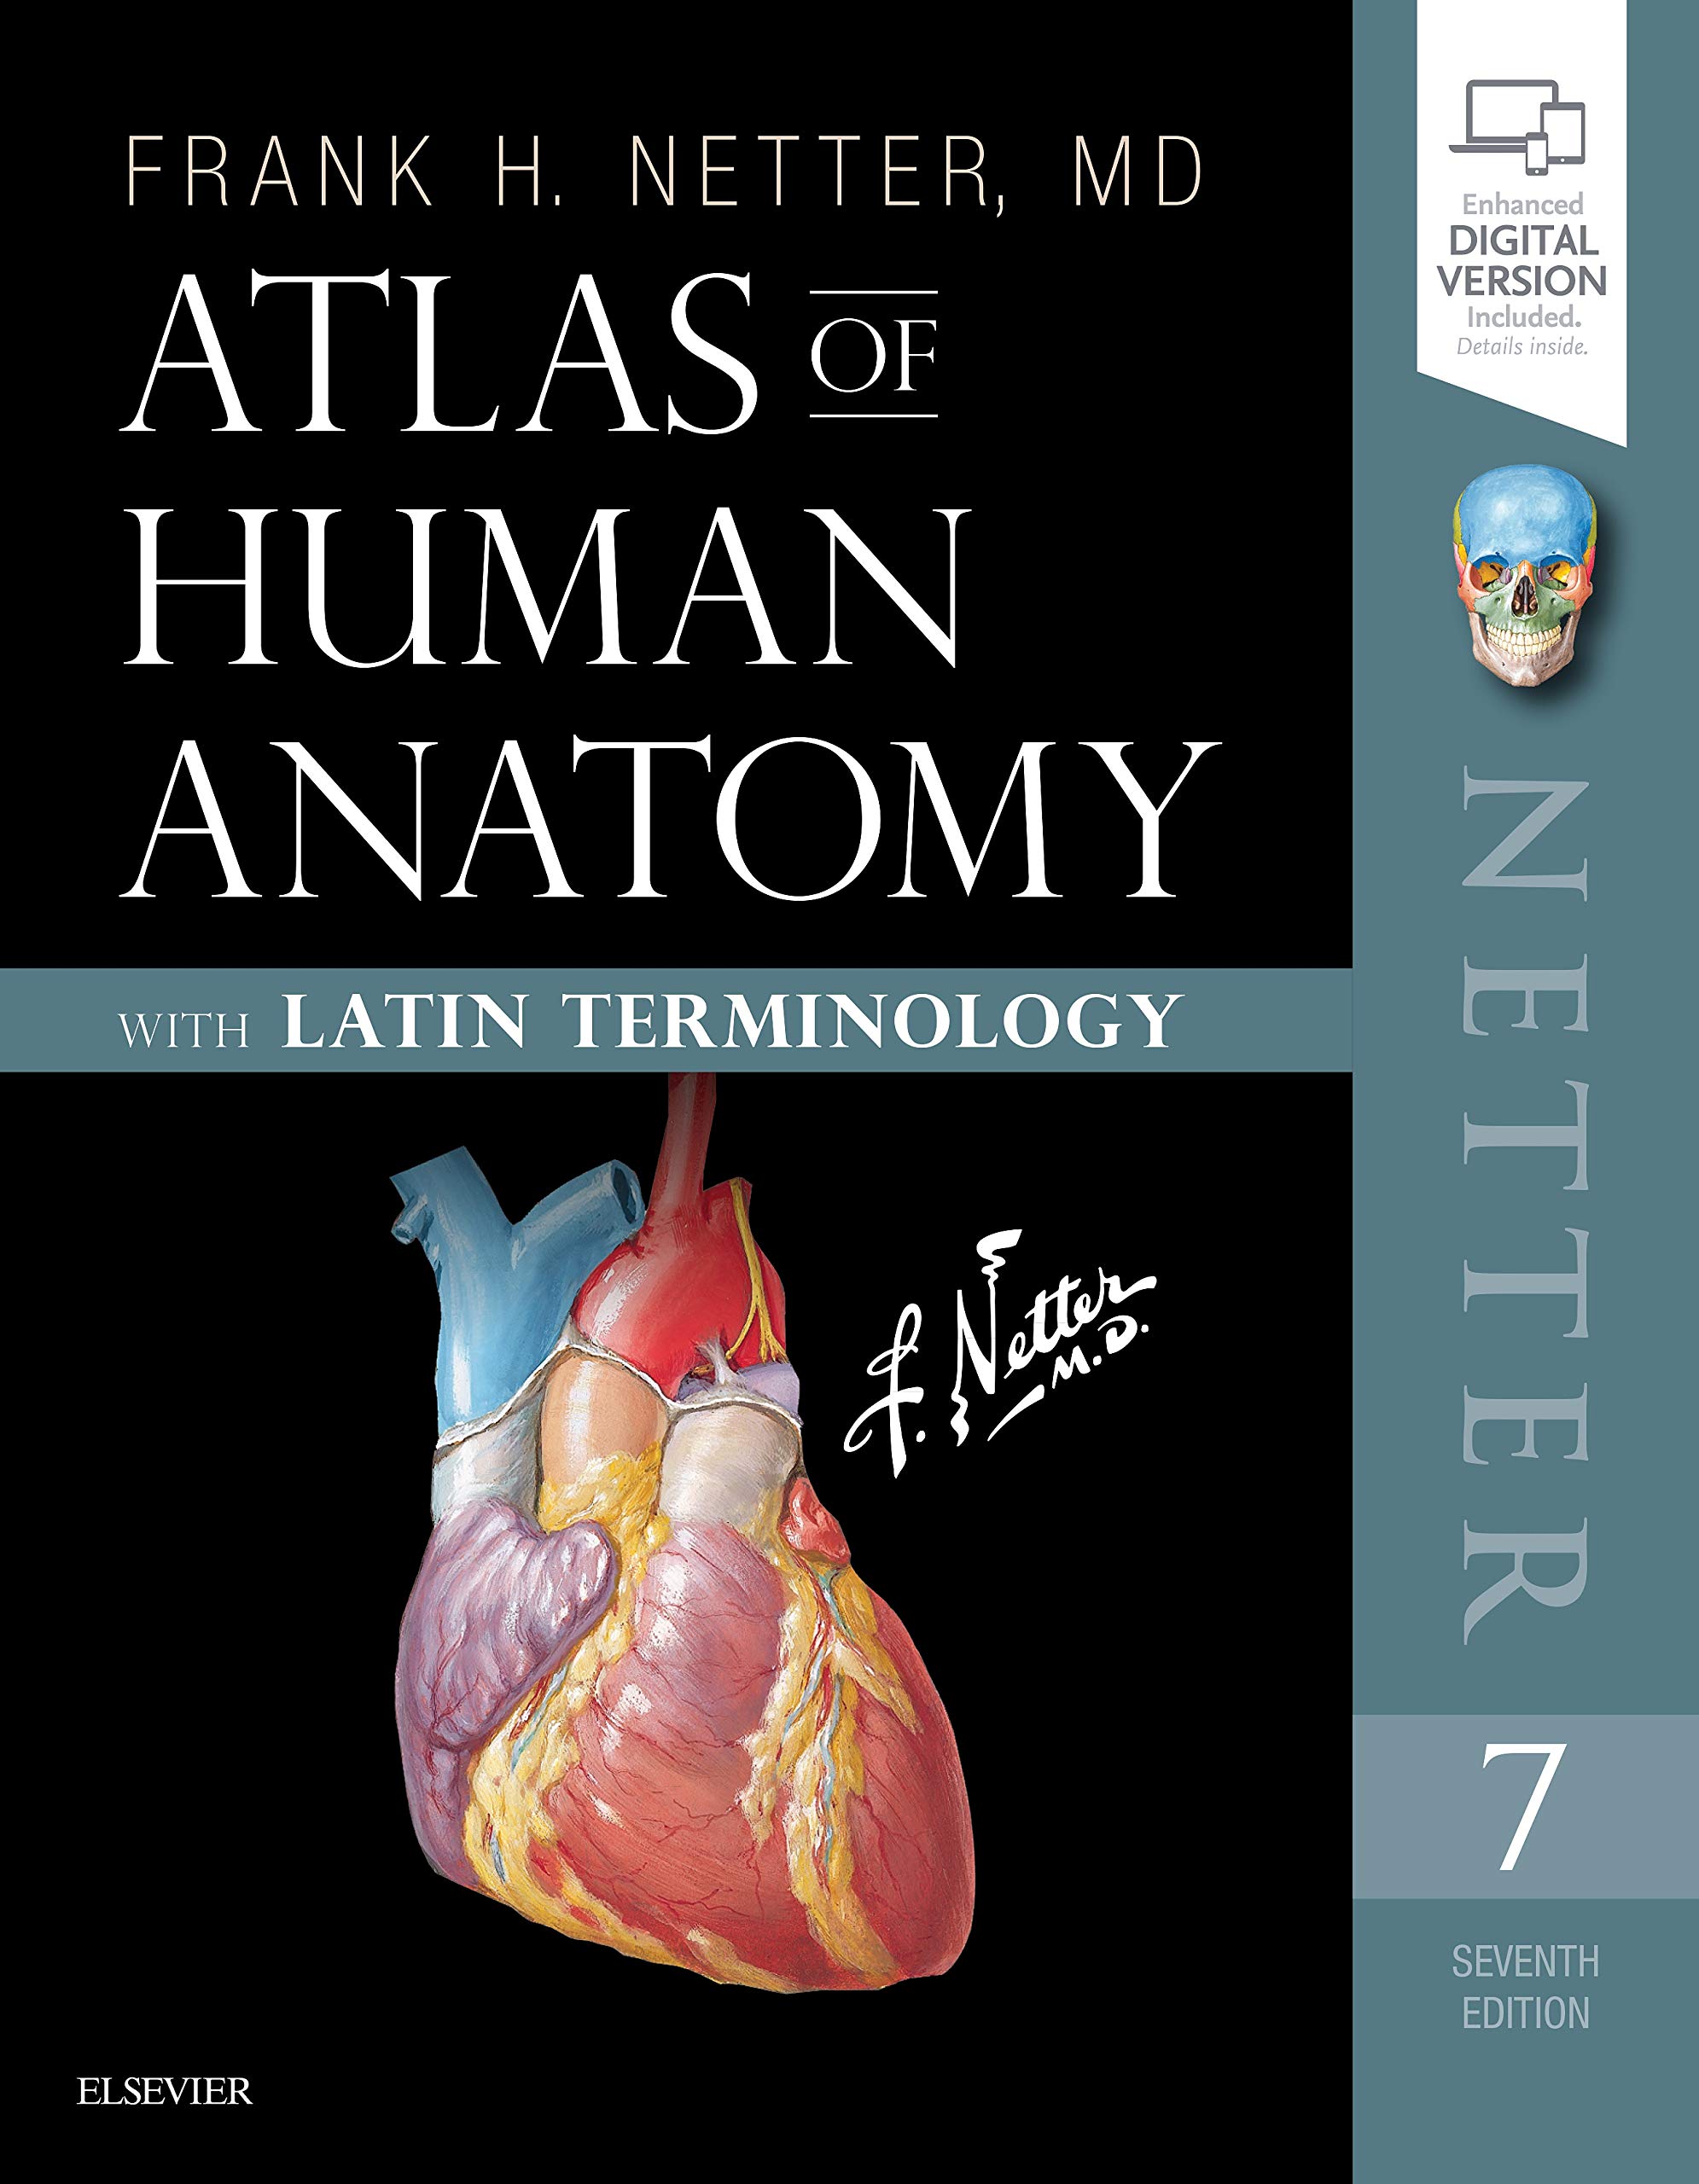 Фрэнк неттер атлас. Атлас анатомии человека Неттера. Атлас анатомии человека Фрэнк Неттер 4 издание. Фрэнк Неттер атлас анатомии человека. Фрэнк Неттер атлас анатомии человека 2003.